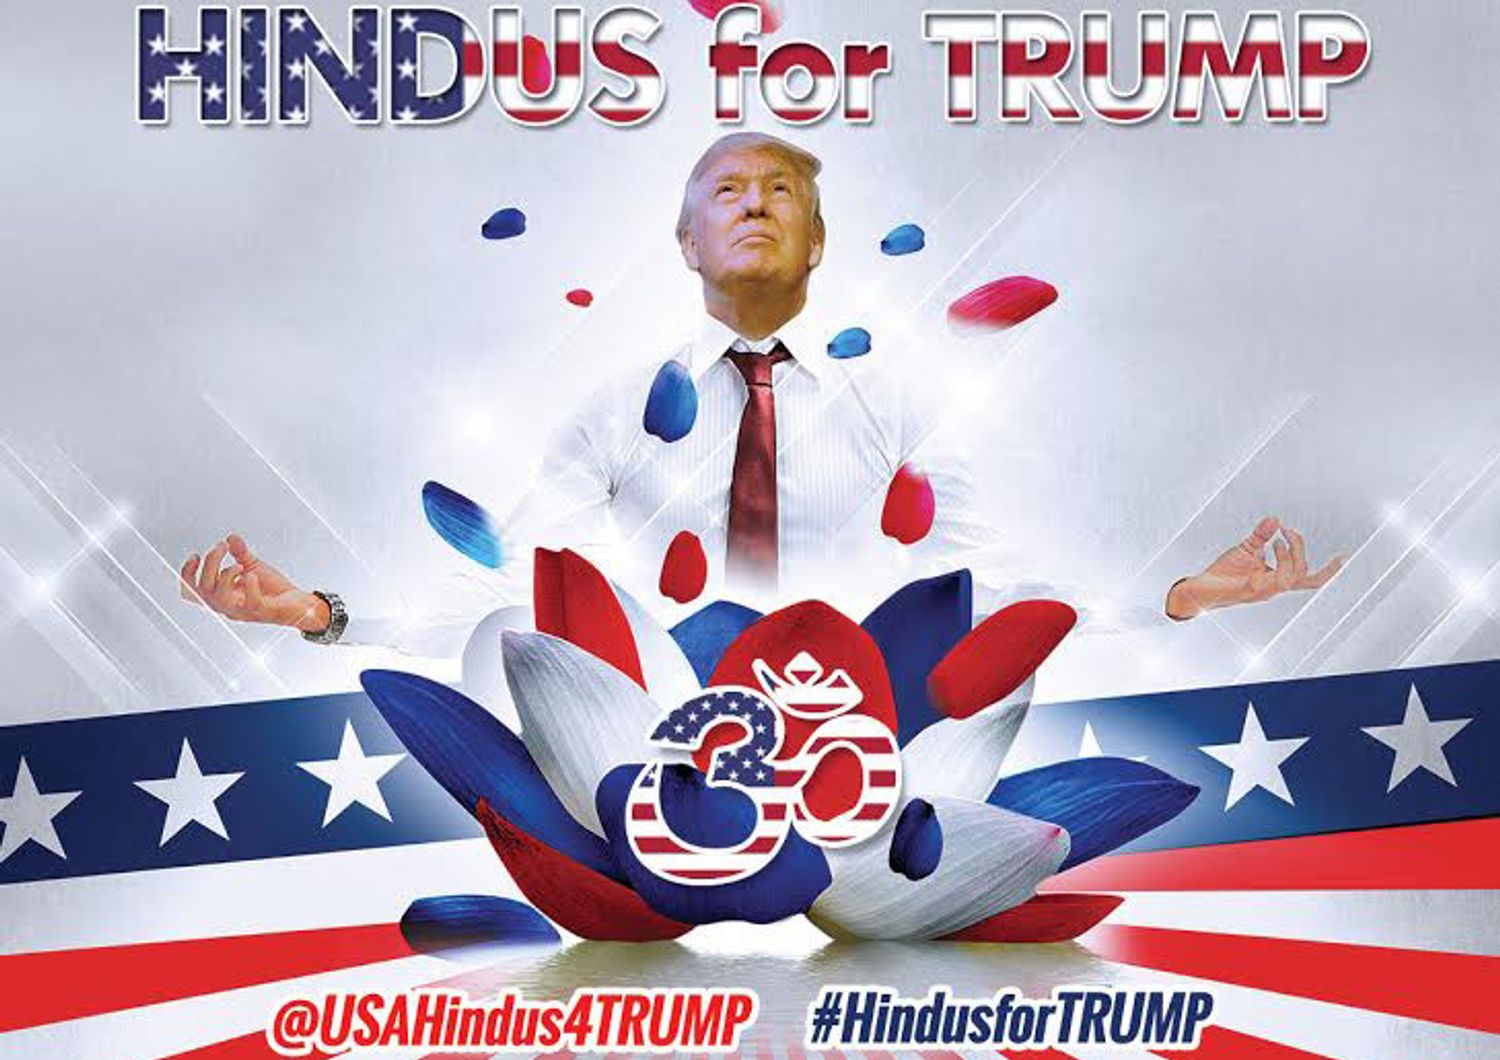 Hindus for trump&nbsp;